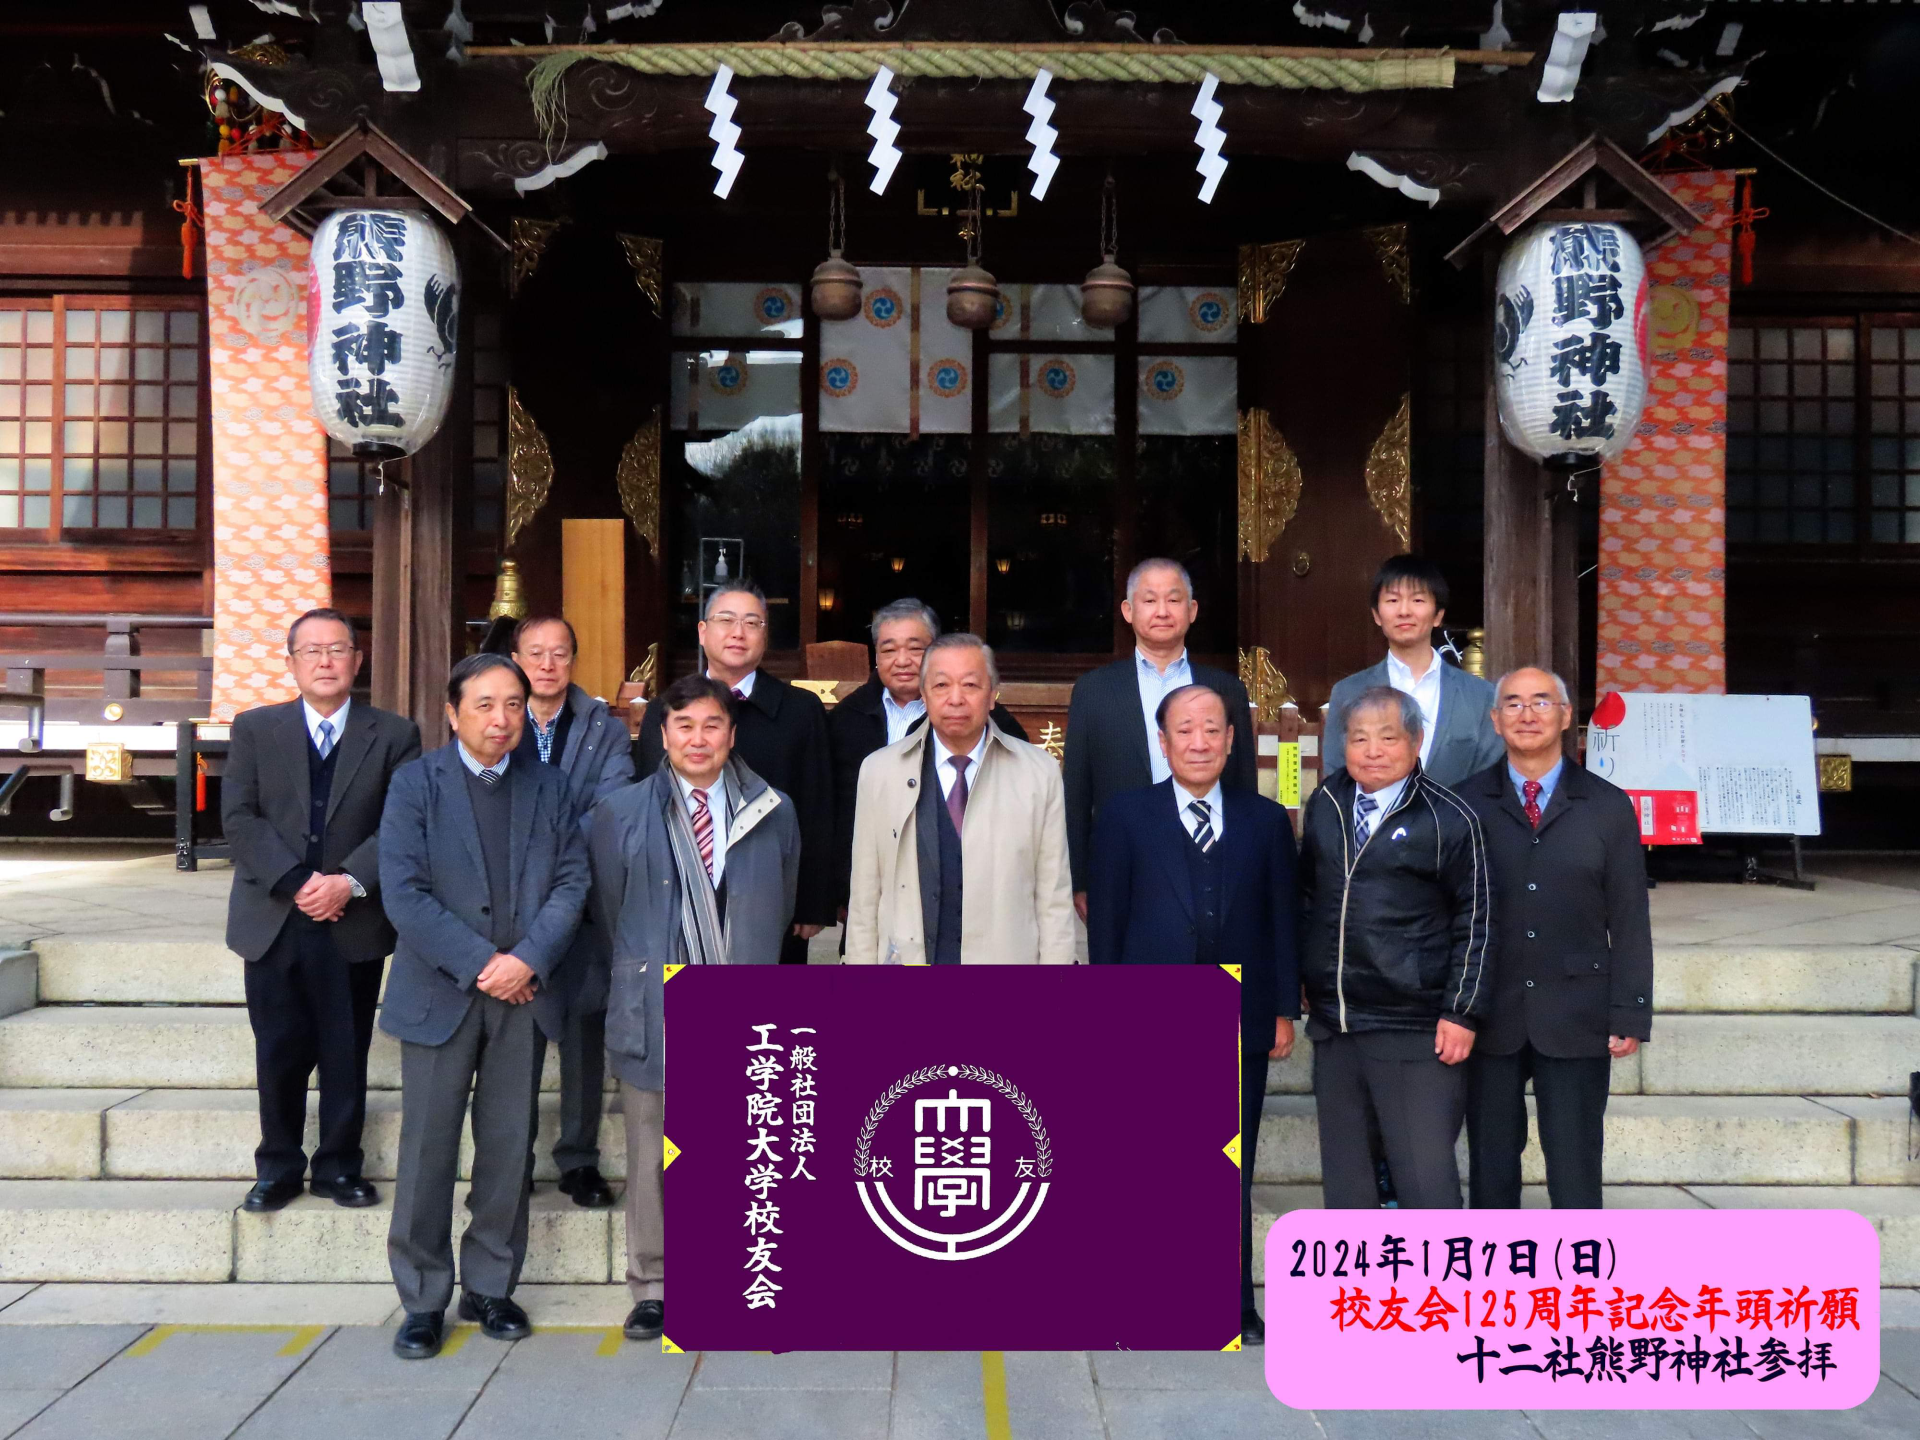 新宿十二社 熊野神社にて校友会創立125周年記念年頭祈願